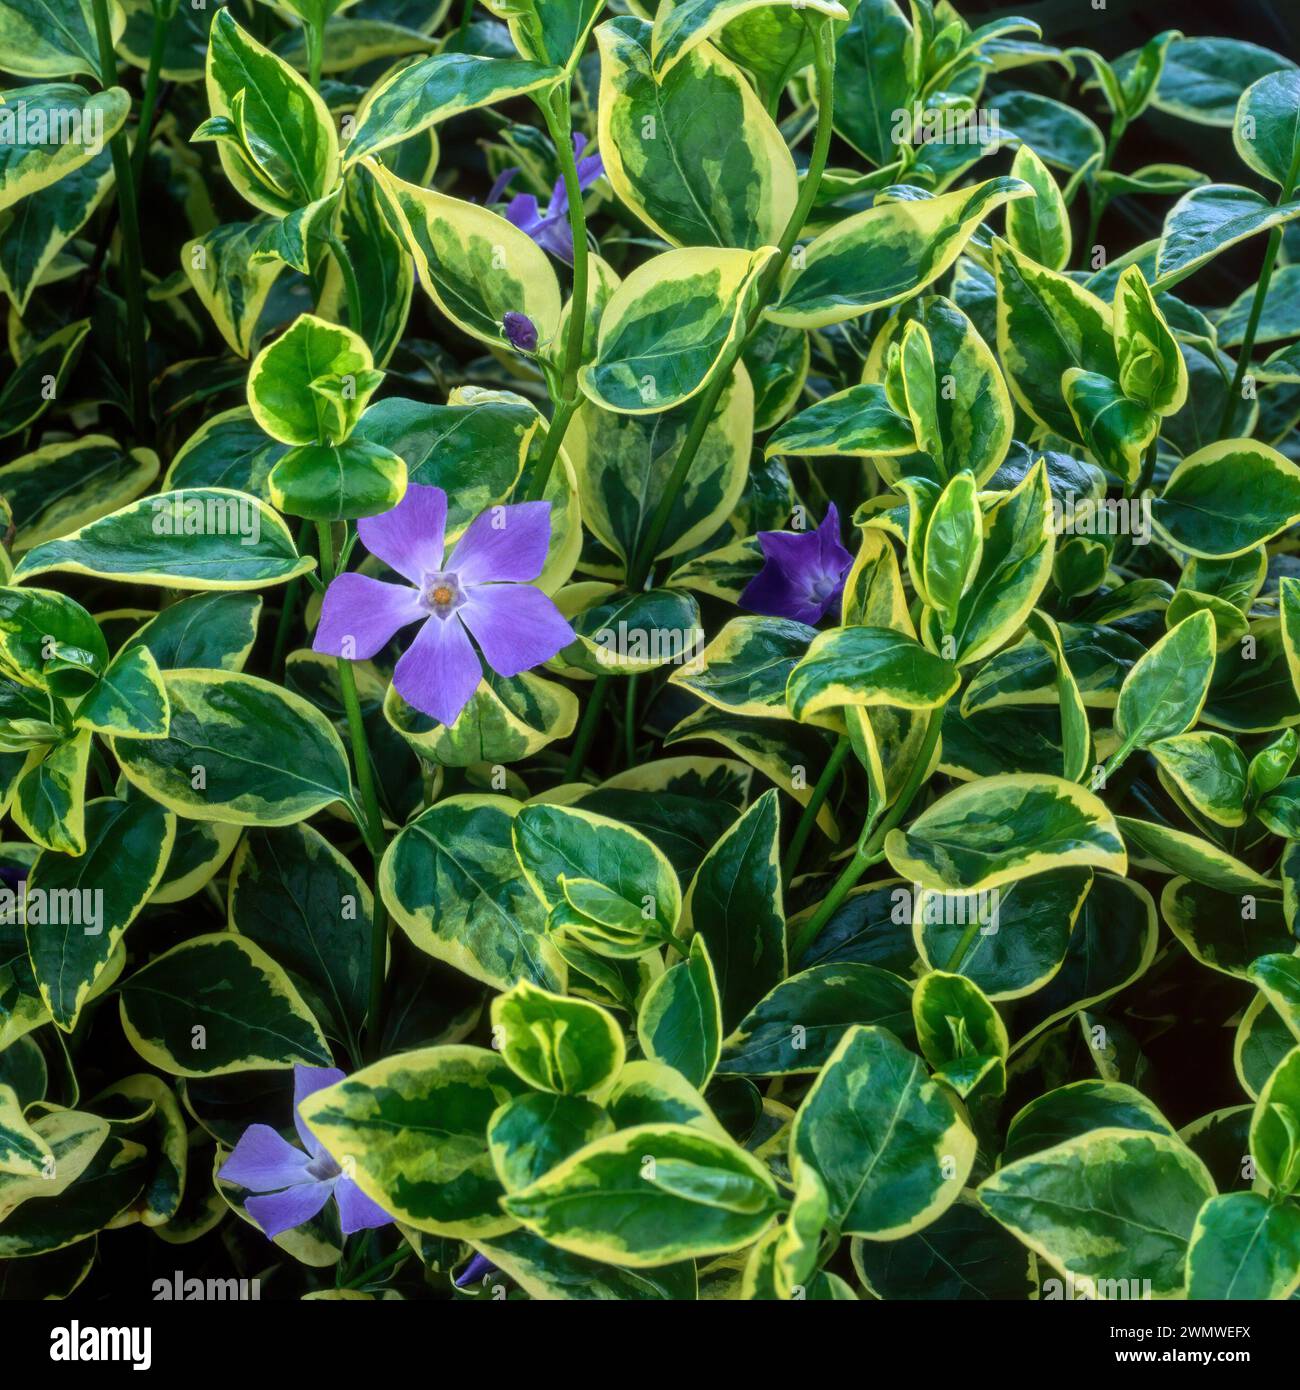 Vinca Major variegata (variegated Greater Periwinkle) mit violettblauen Blüten und bunten grünen und cremefarbenen Blättern, die im englischen Garten, Großbritannien, wachsen Stockfoto